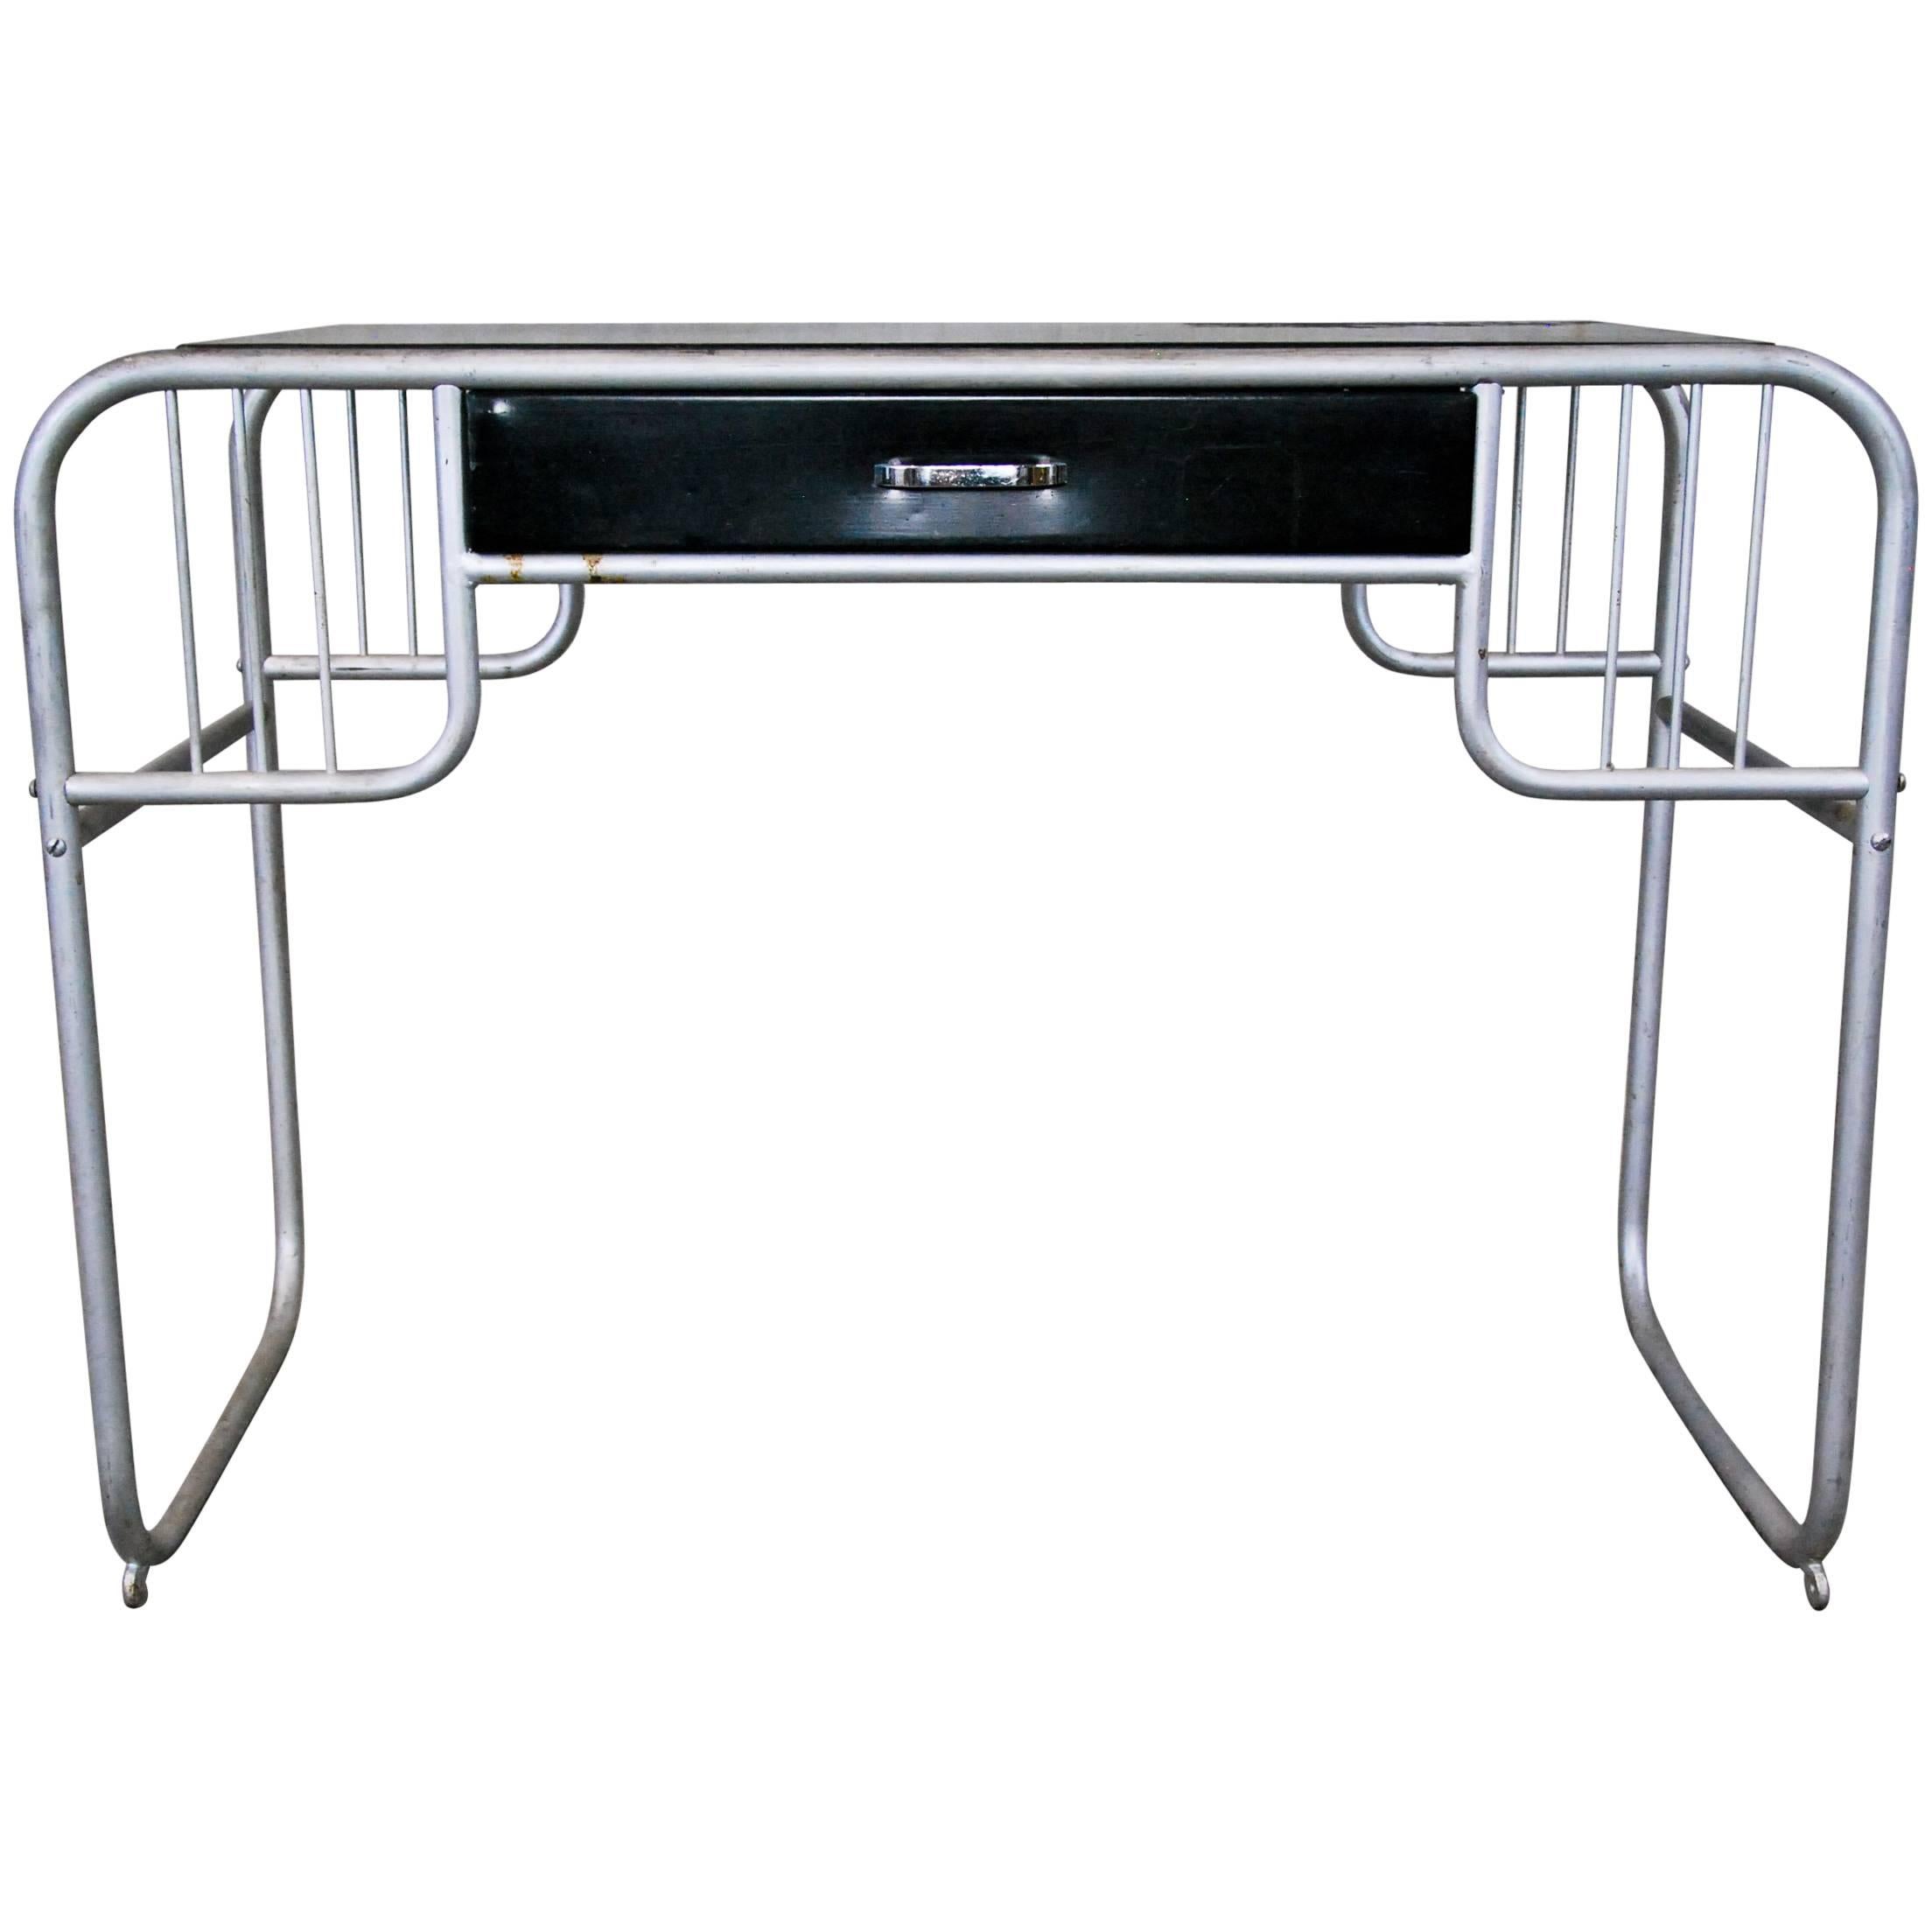 Bauhaus-Style, Tubular Metal Desk with Single Drawer